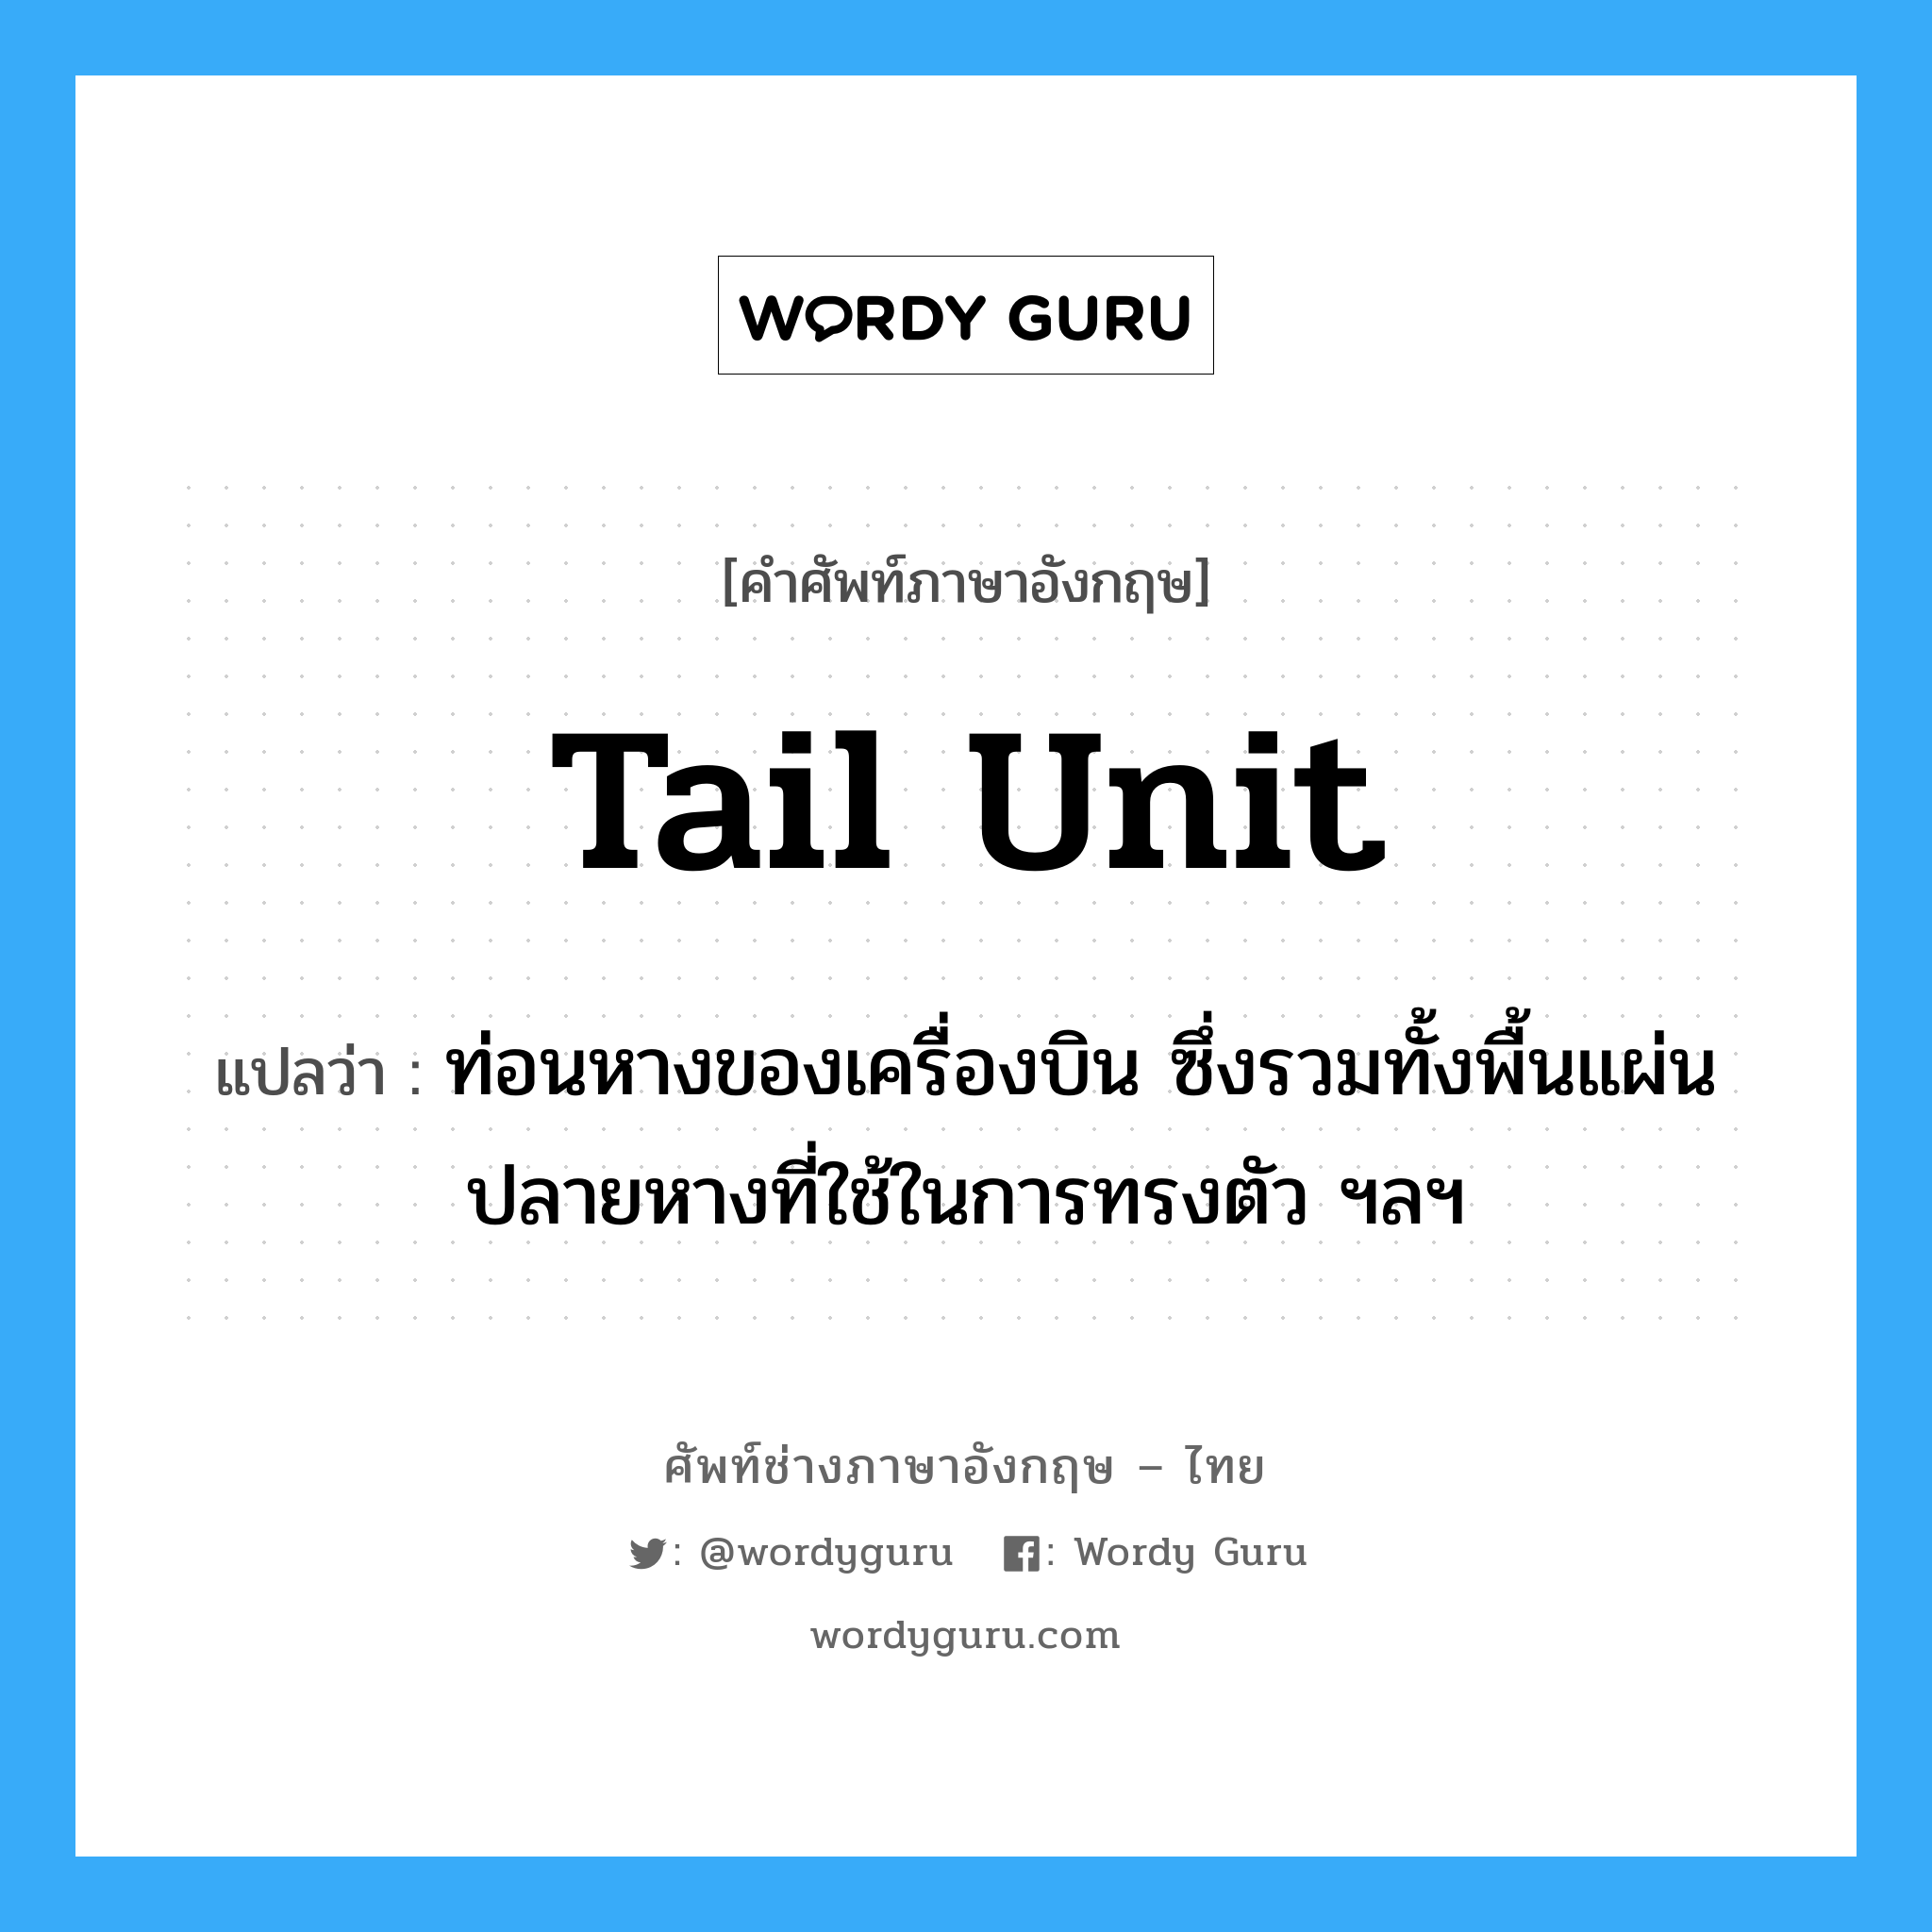 tail unit แปลว่า?, คำศัพท์ช่างภาษาอังกฤษ - ไทย tail unit คำศัพท์ภาษาอังกฤษ tail unit แปลว่า ท่อนหางของเครื่องบิน ซึ่งรวมทั้งพื้นแผ่นปลายหางที่ใช้ในการทรงตัว ฯลฯ